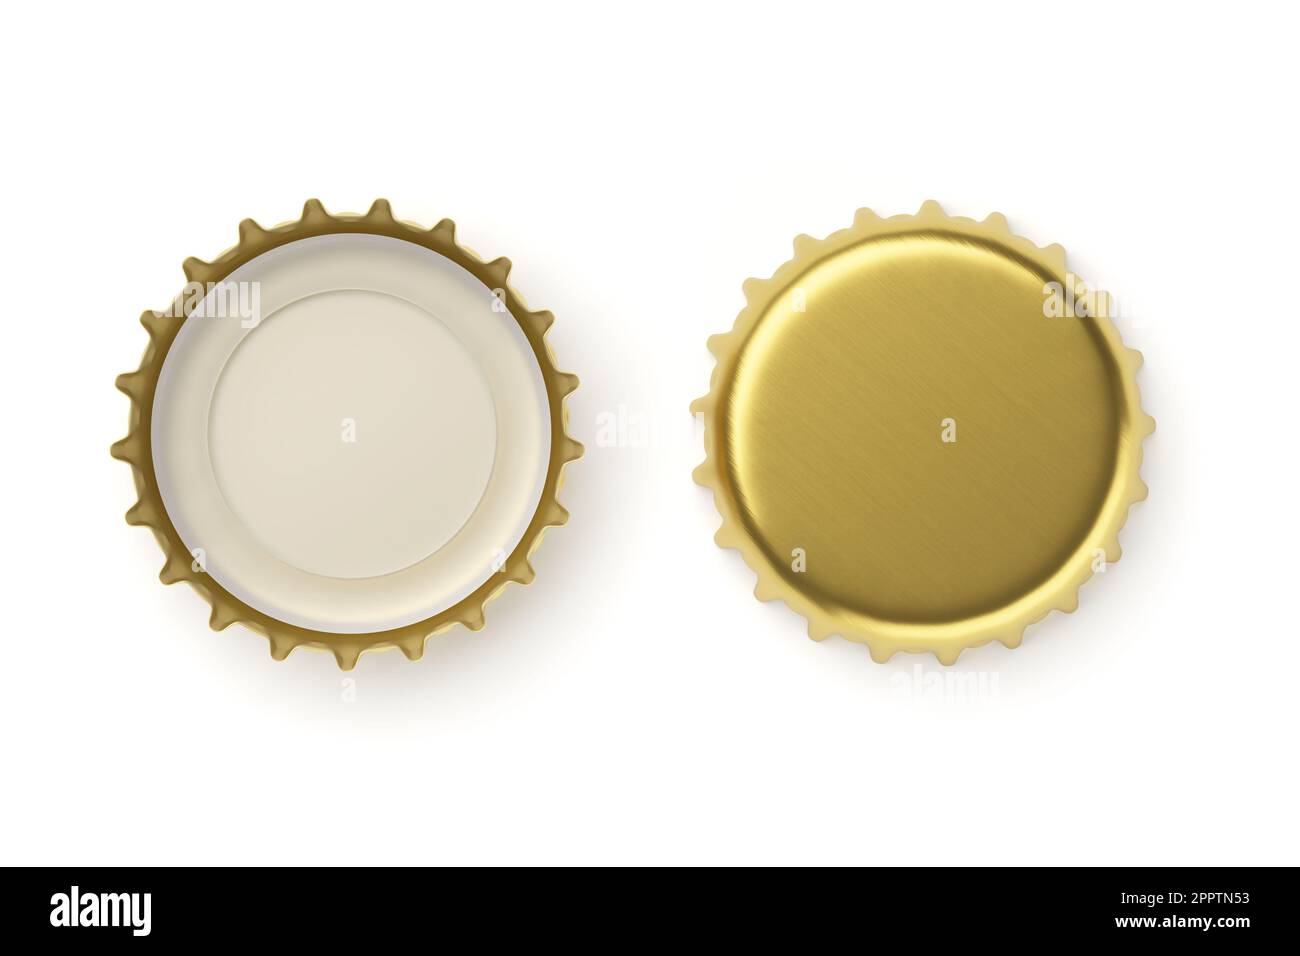 Goldene Bierkappen, isoliert auf weißem Hintergrund. Leere Metall-Soda-Kappen-Modelle. 3D-Rendering-Abbildung. Stockfoto